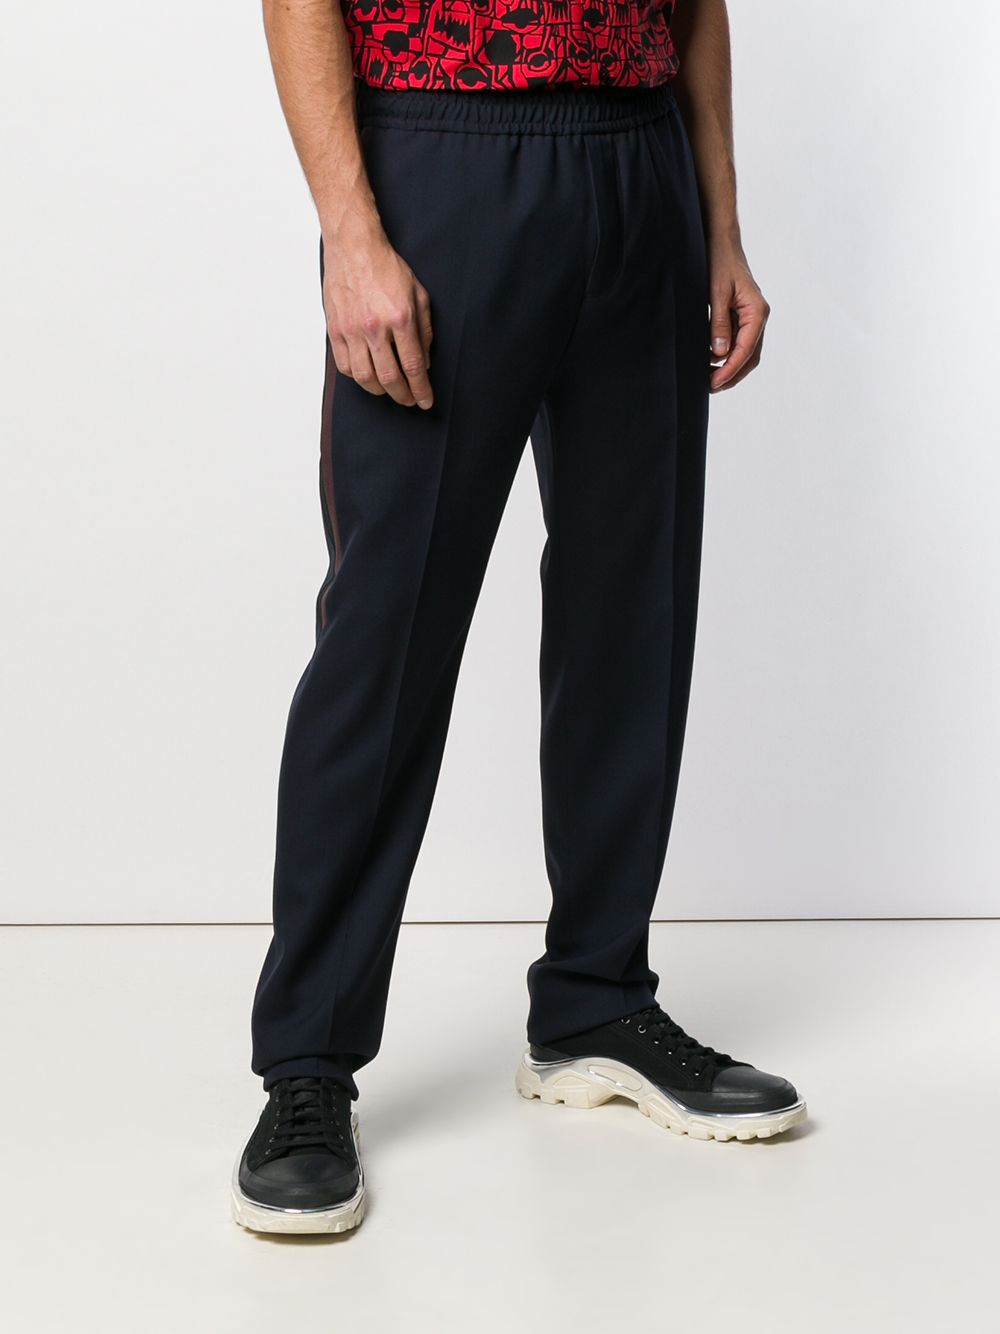 фото Givenchy спортивные брюки